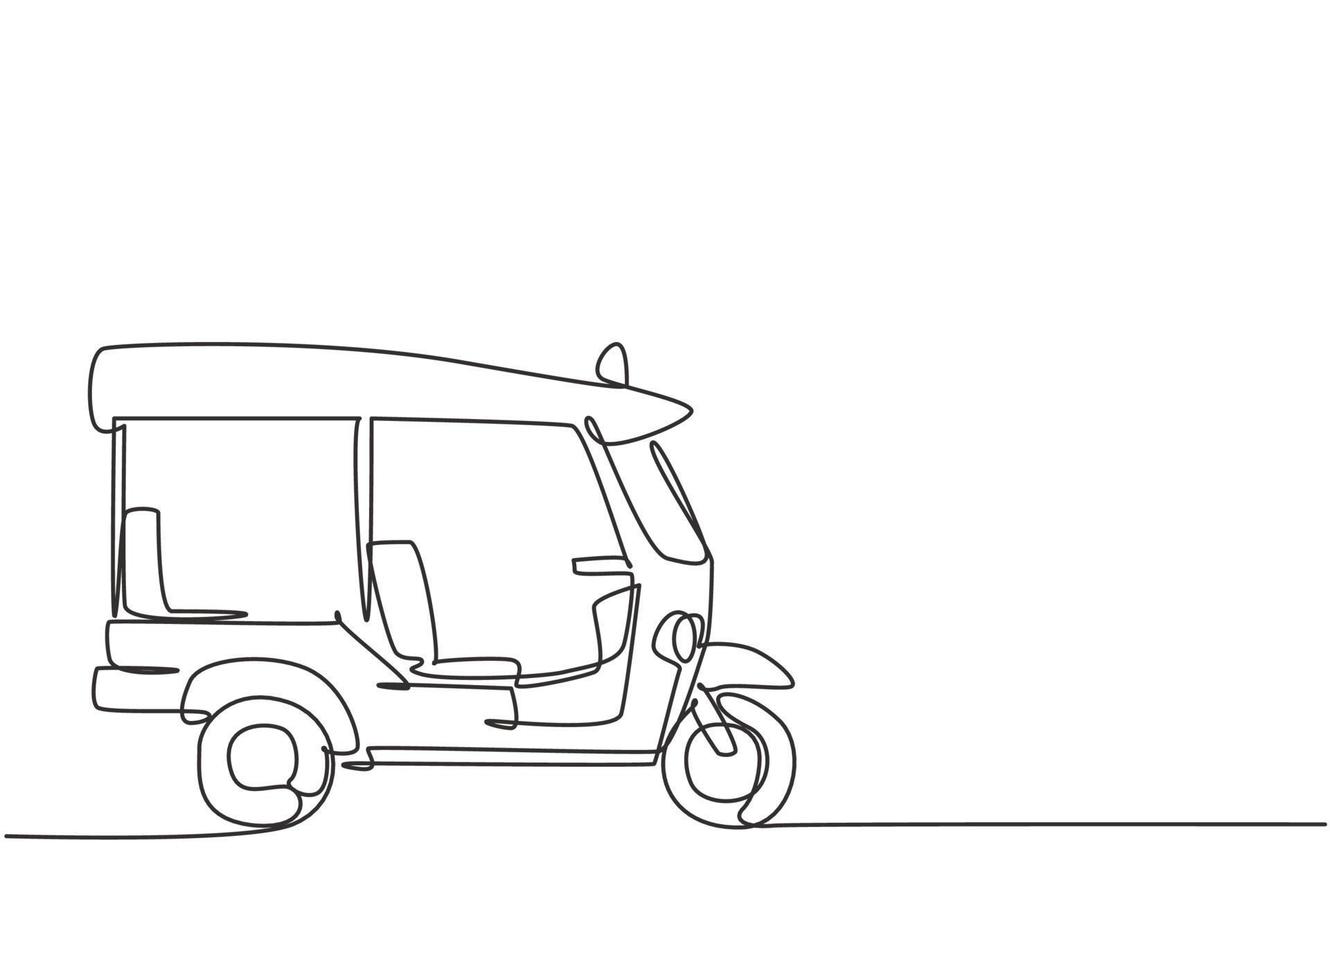 dibujo de una sola línea del tuk tuk tailandés visto desde el lado que atiende a los pasajeros extranjeros que viajan en Tailandia. conviértete en un ícono del turismo. Ilustración de vector gráfico de diseño de dibujo de línea continua.